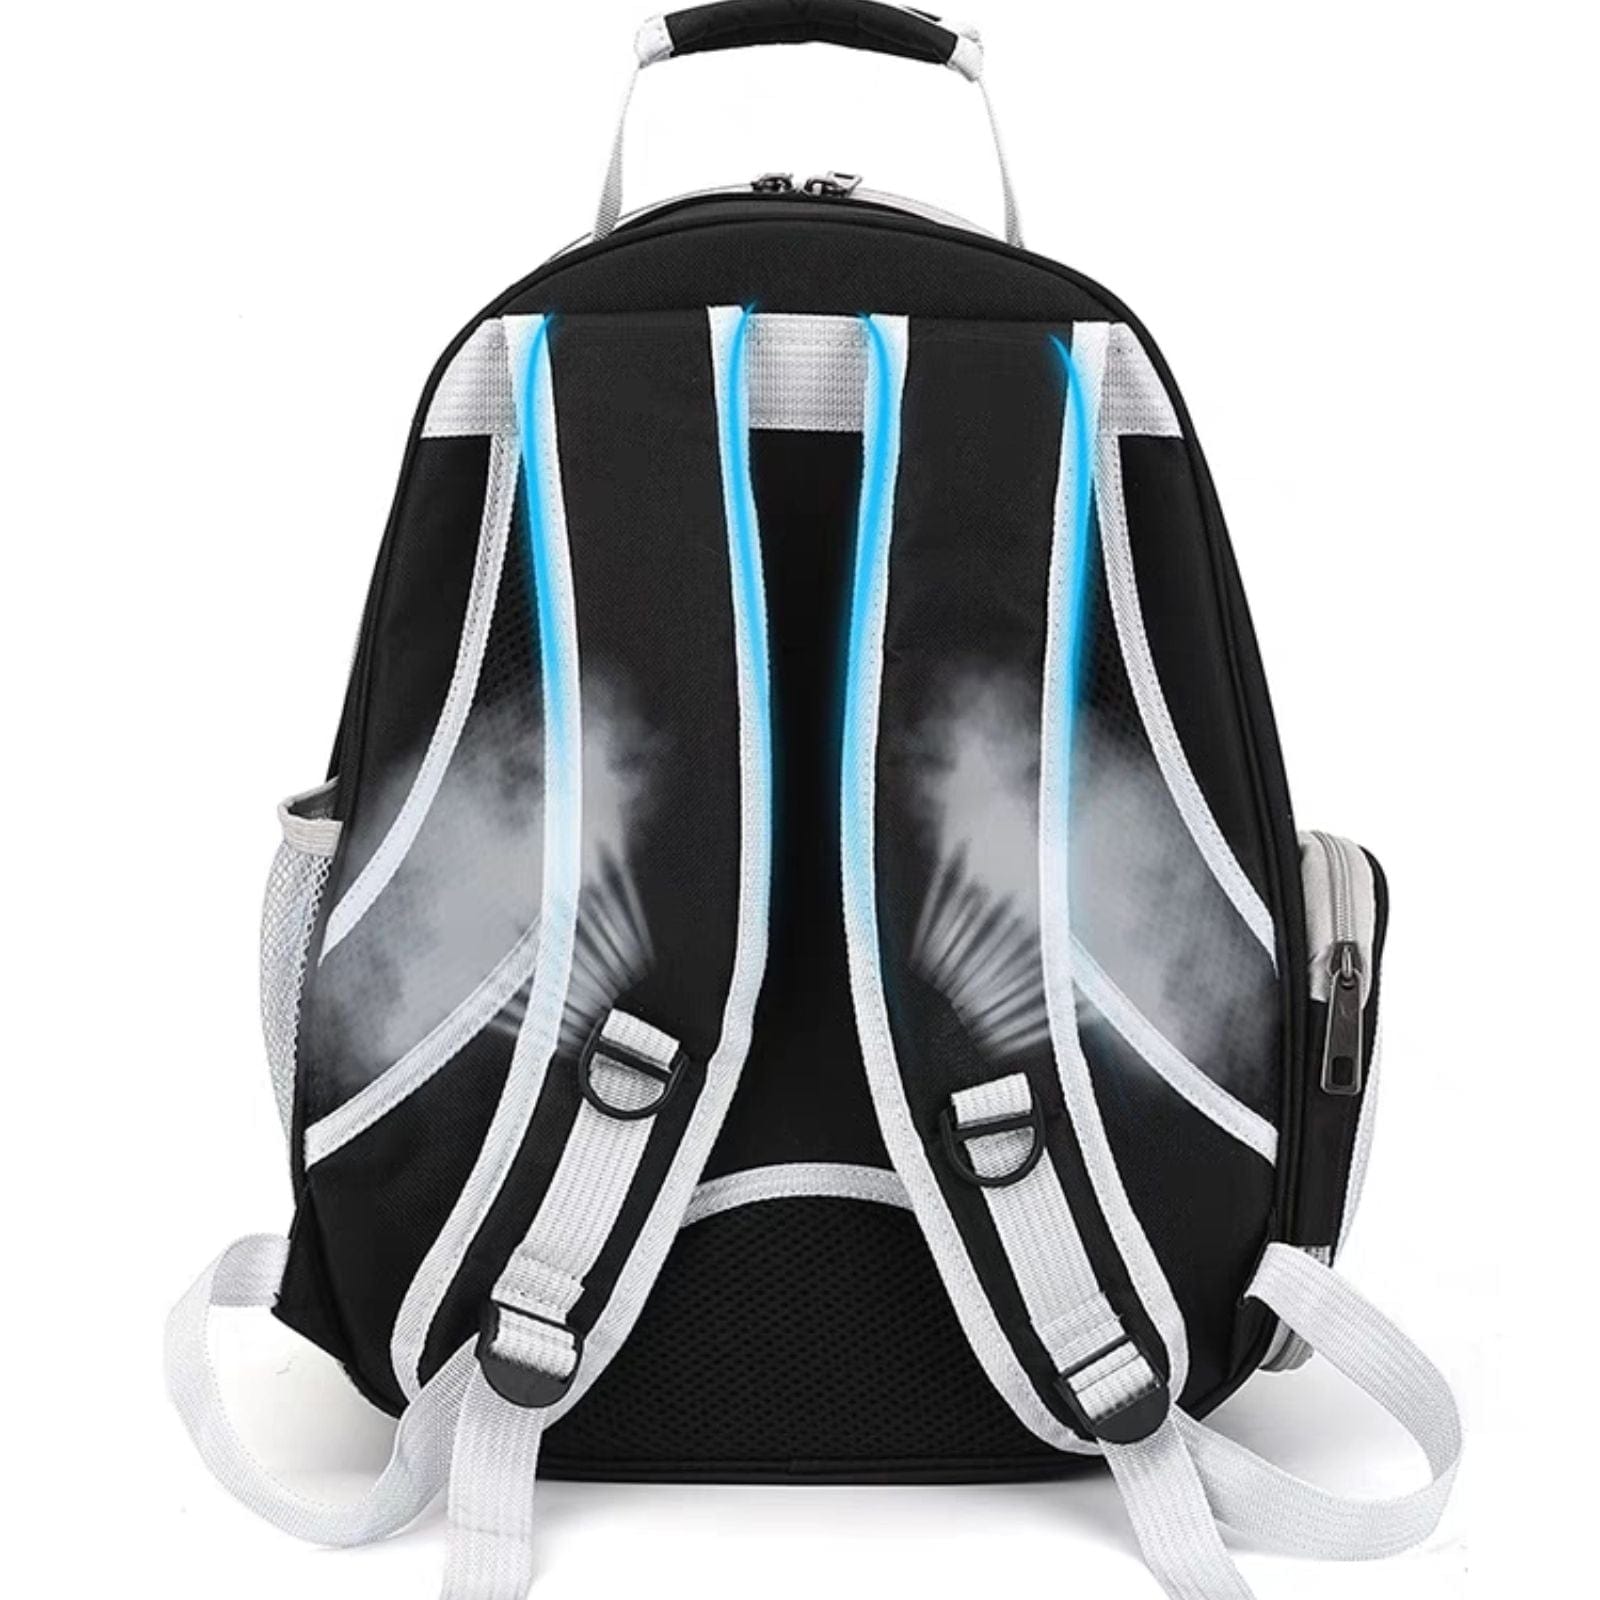 Space Capsule Backpack - Model 2 Black